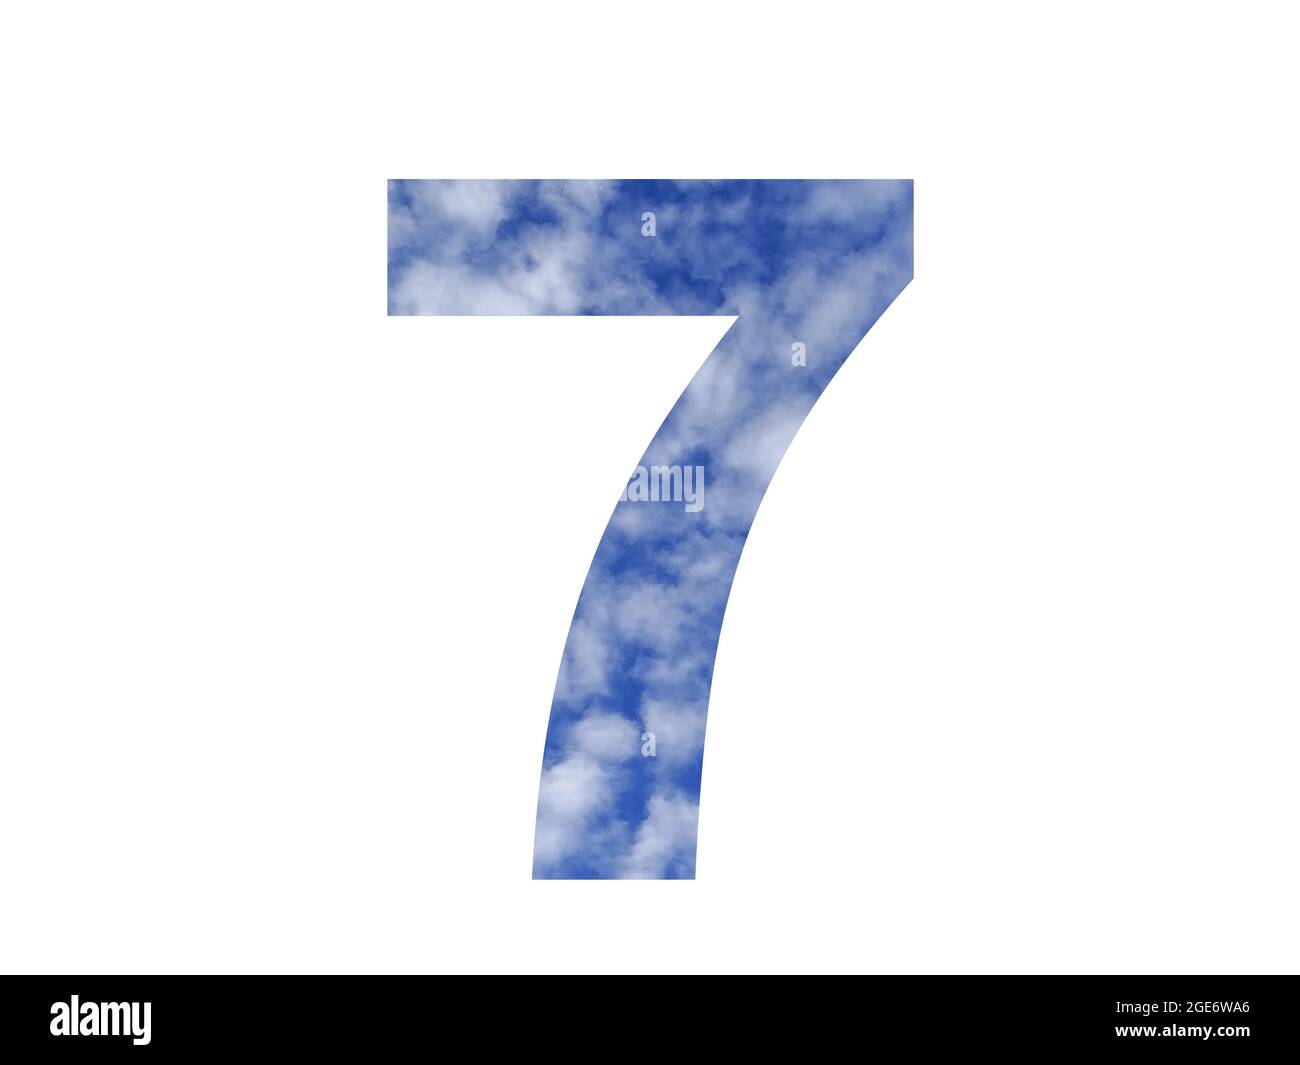 Nummer 7 des Alphabets mit blauem Himmel und weißen Wolken, isoliert auf weißem Hintergrund Stockfoto